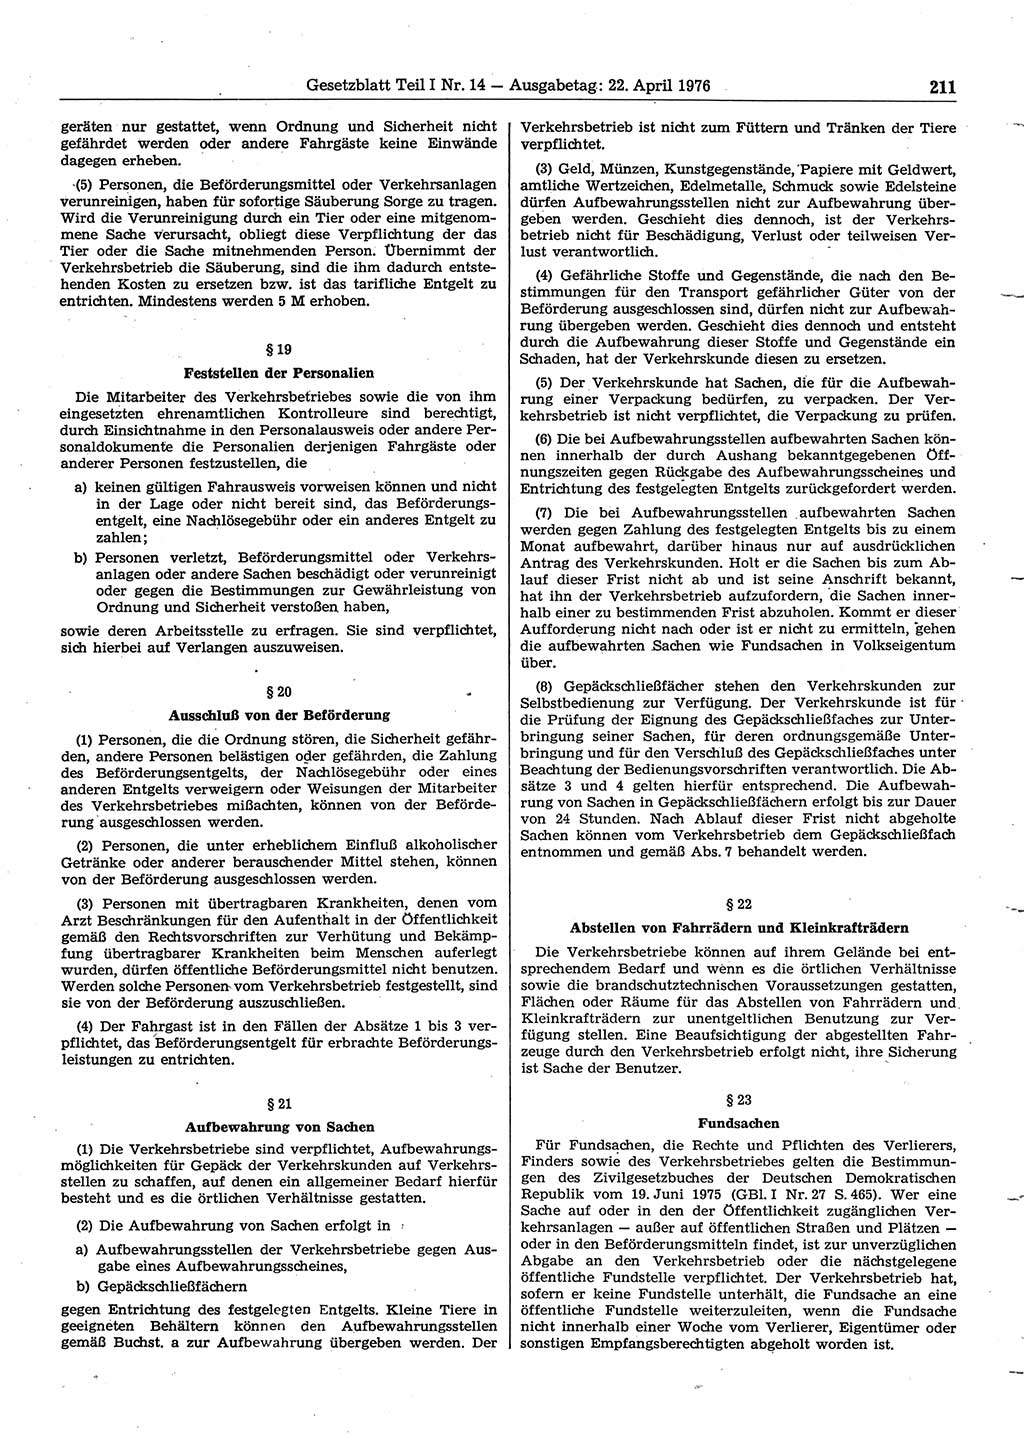 Gesetzblatt (GBl.) der Deutschen Demokratischen Republik (DDR) Teil Ⅰ 1976, Seite 211 (GBl. DDR Ⅰ 1976, S. 211)